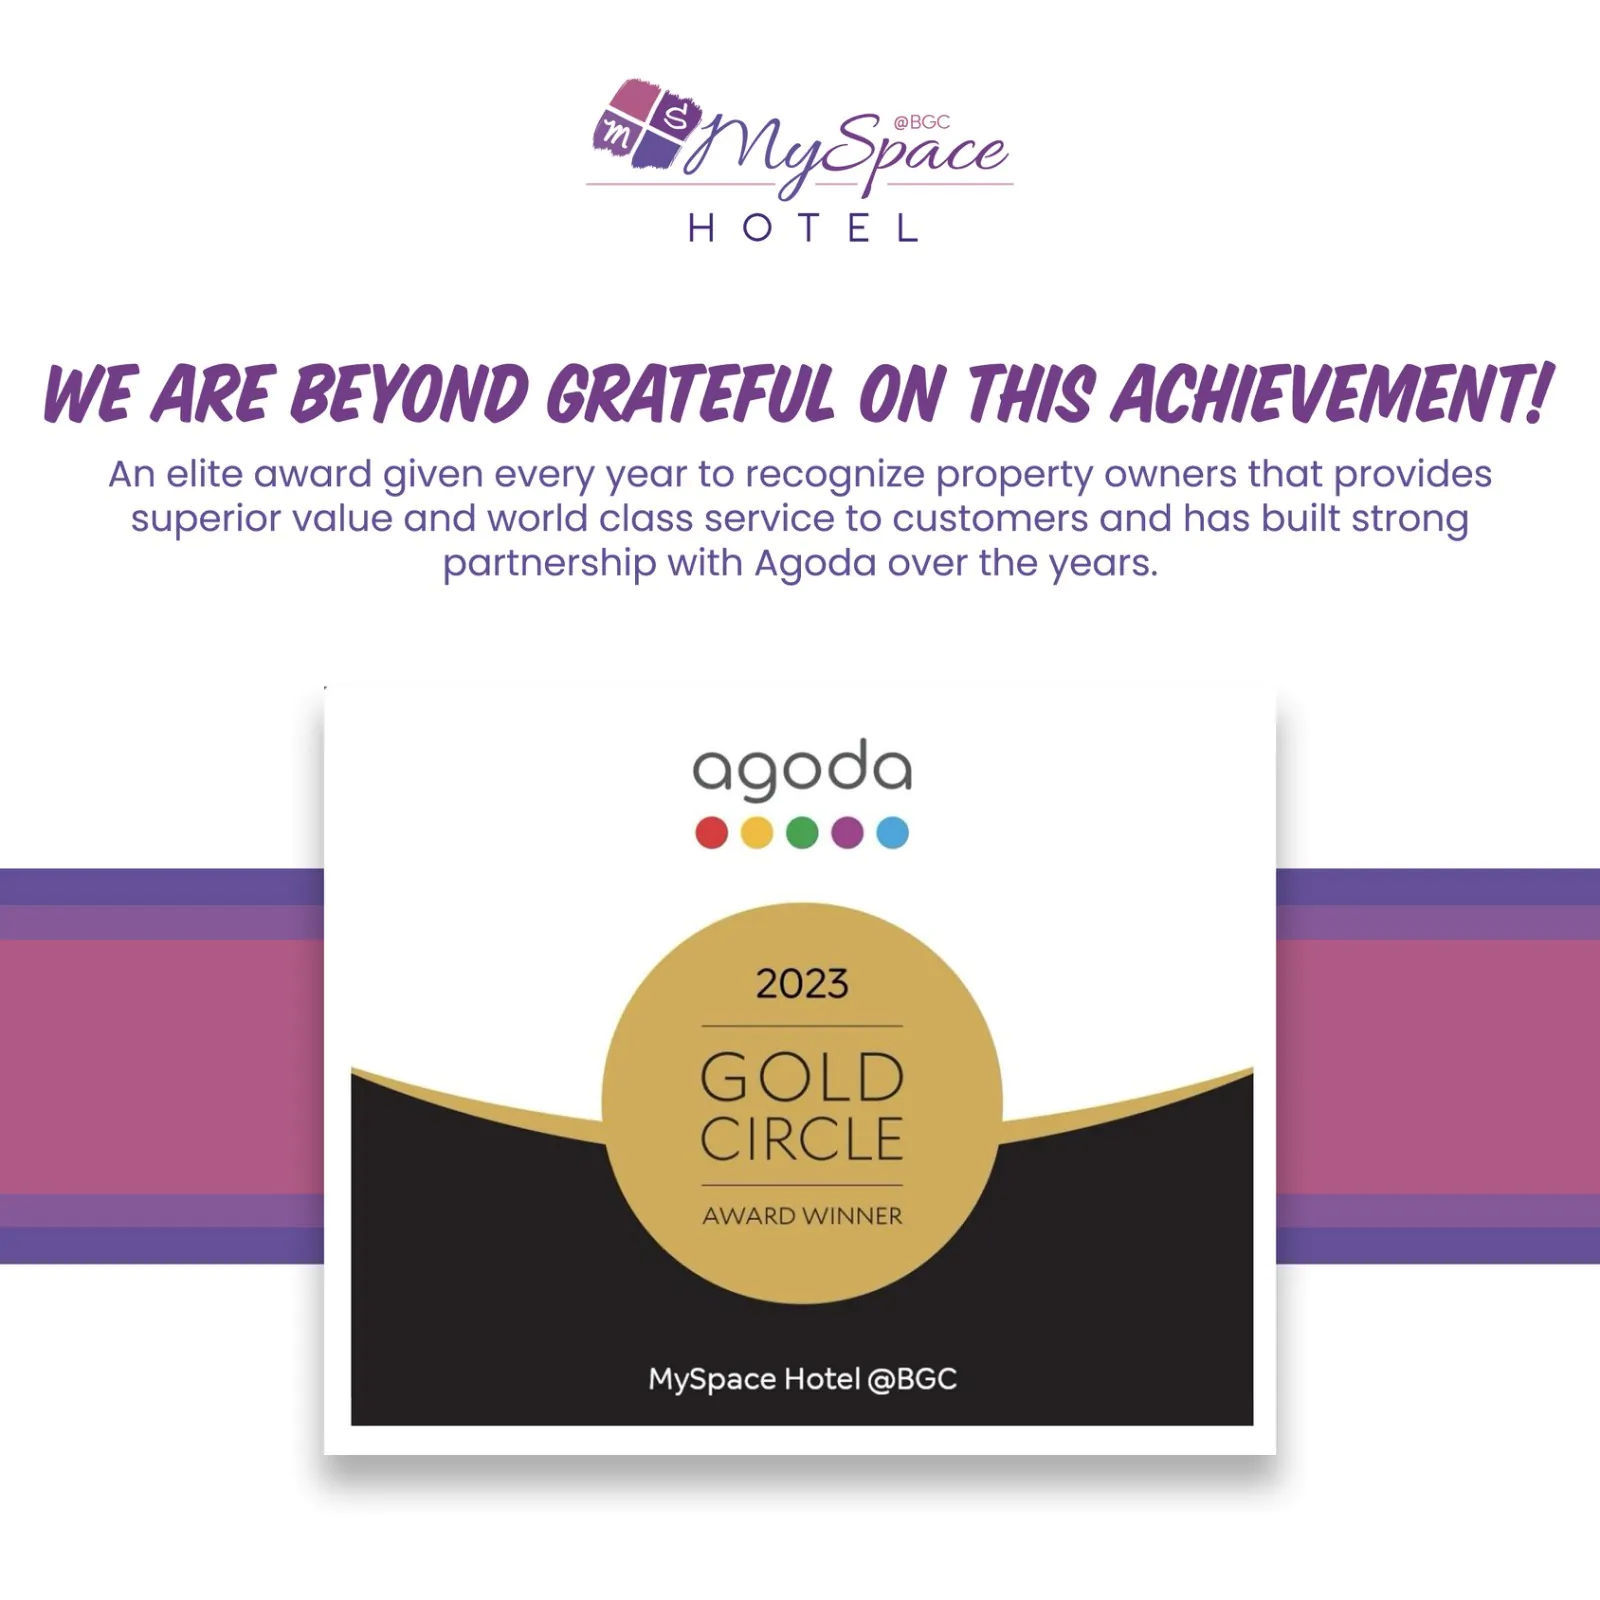 MySpace Hotel BGC Agoda Gold Cirlce Award